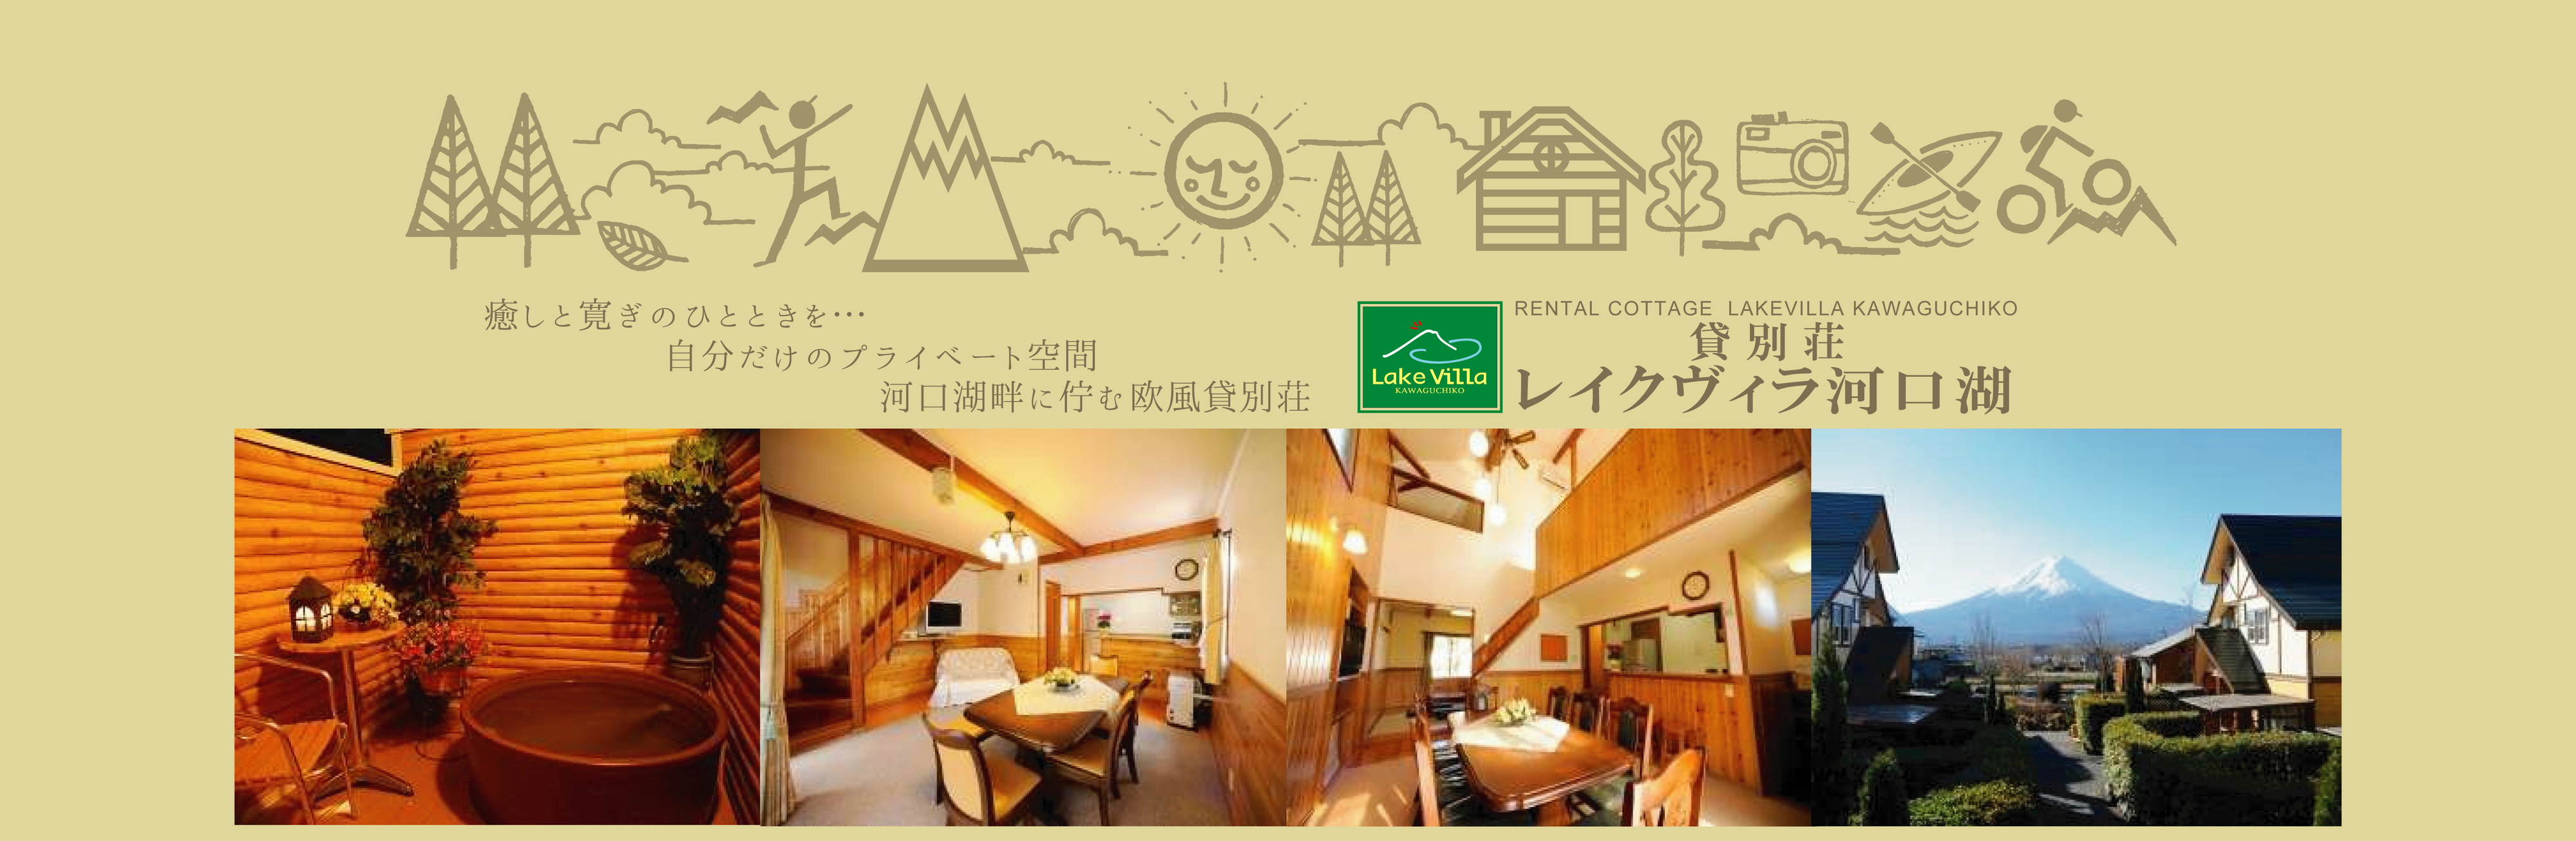 公式 貸別荘 レイクヴィラ河口湖 コテージ バーベキュー 富士山 q バケーションレンタル 露天風呂